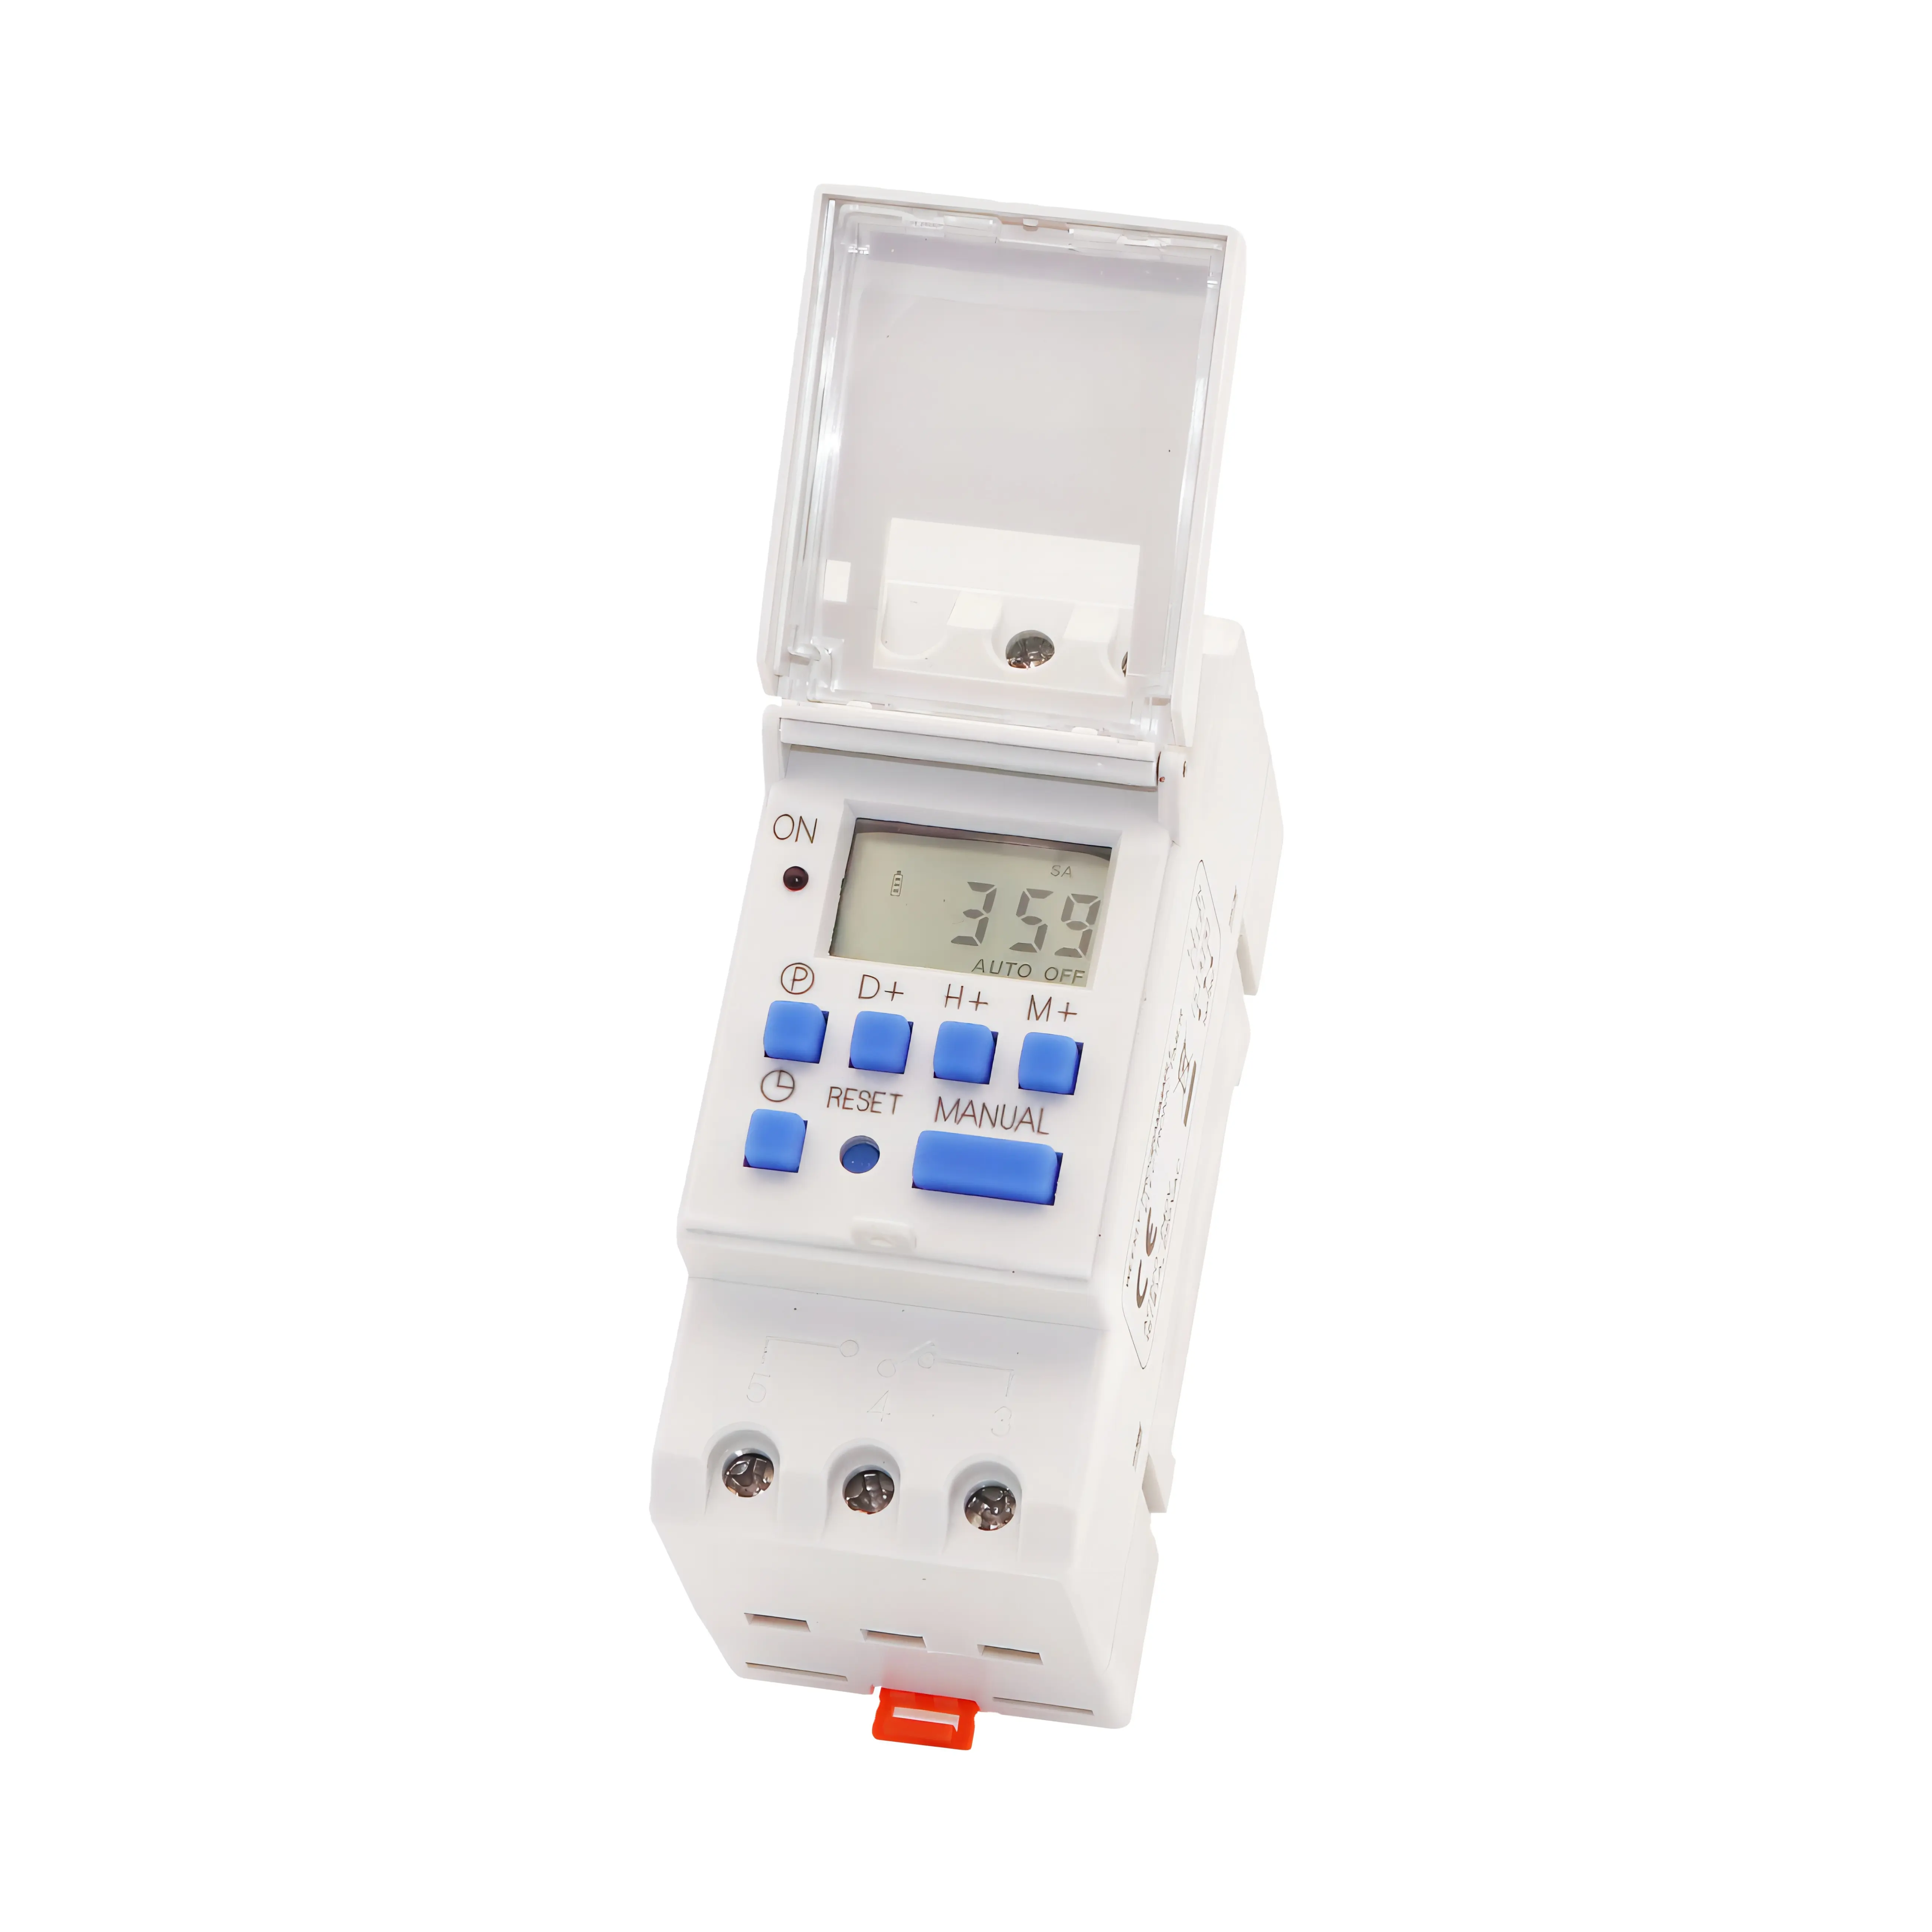 Venta caliente China Microordenador Interruptor de control de tiempo Lámpara de calle automática Cartelera Caja de luz Temporizador 220V